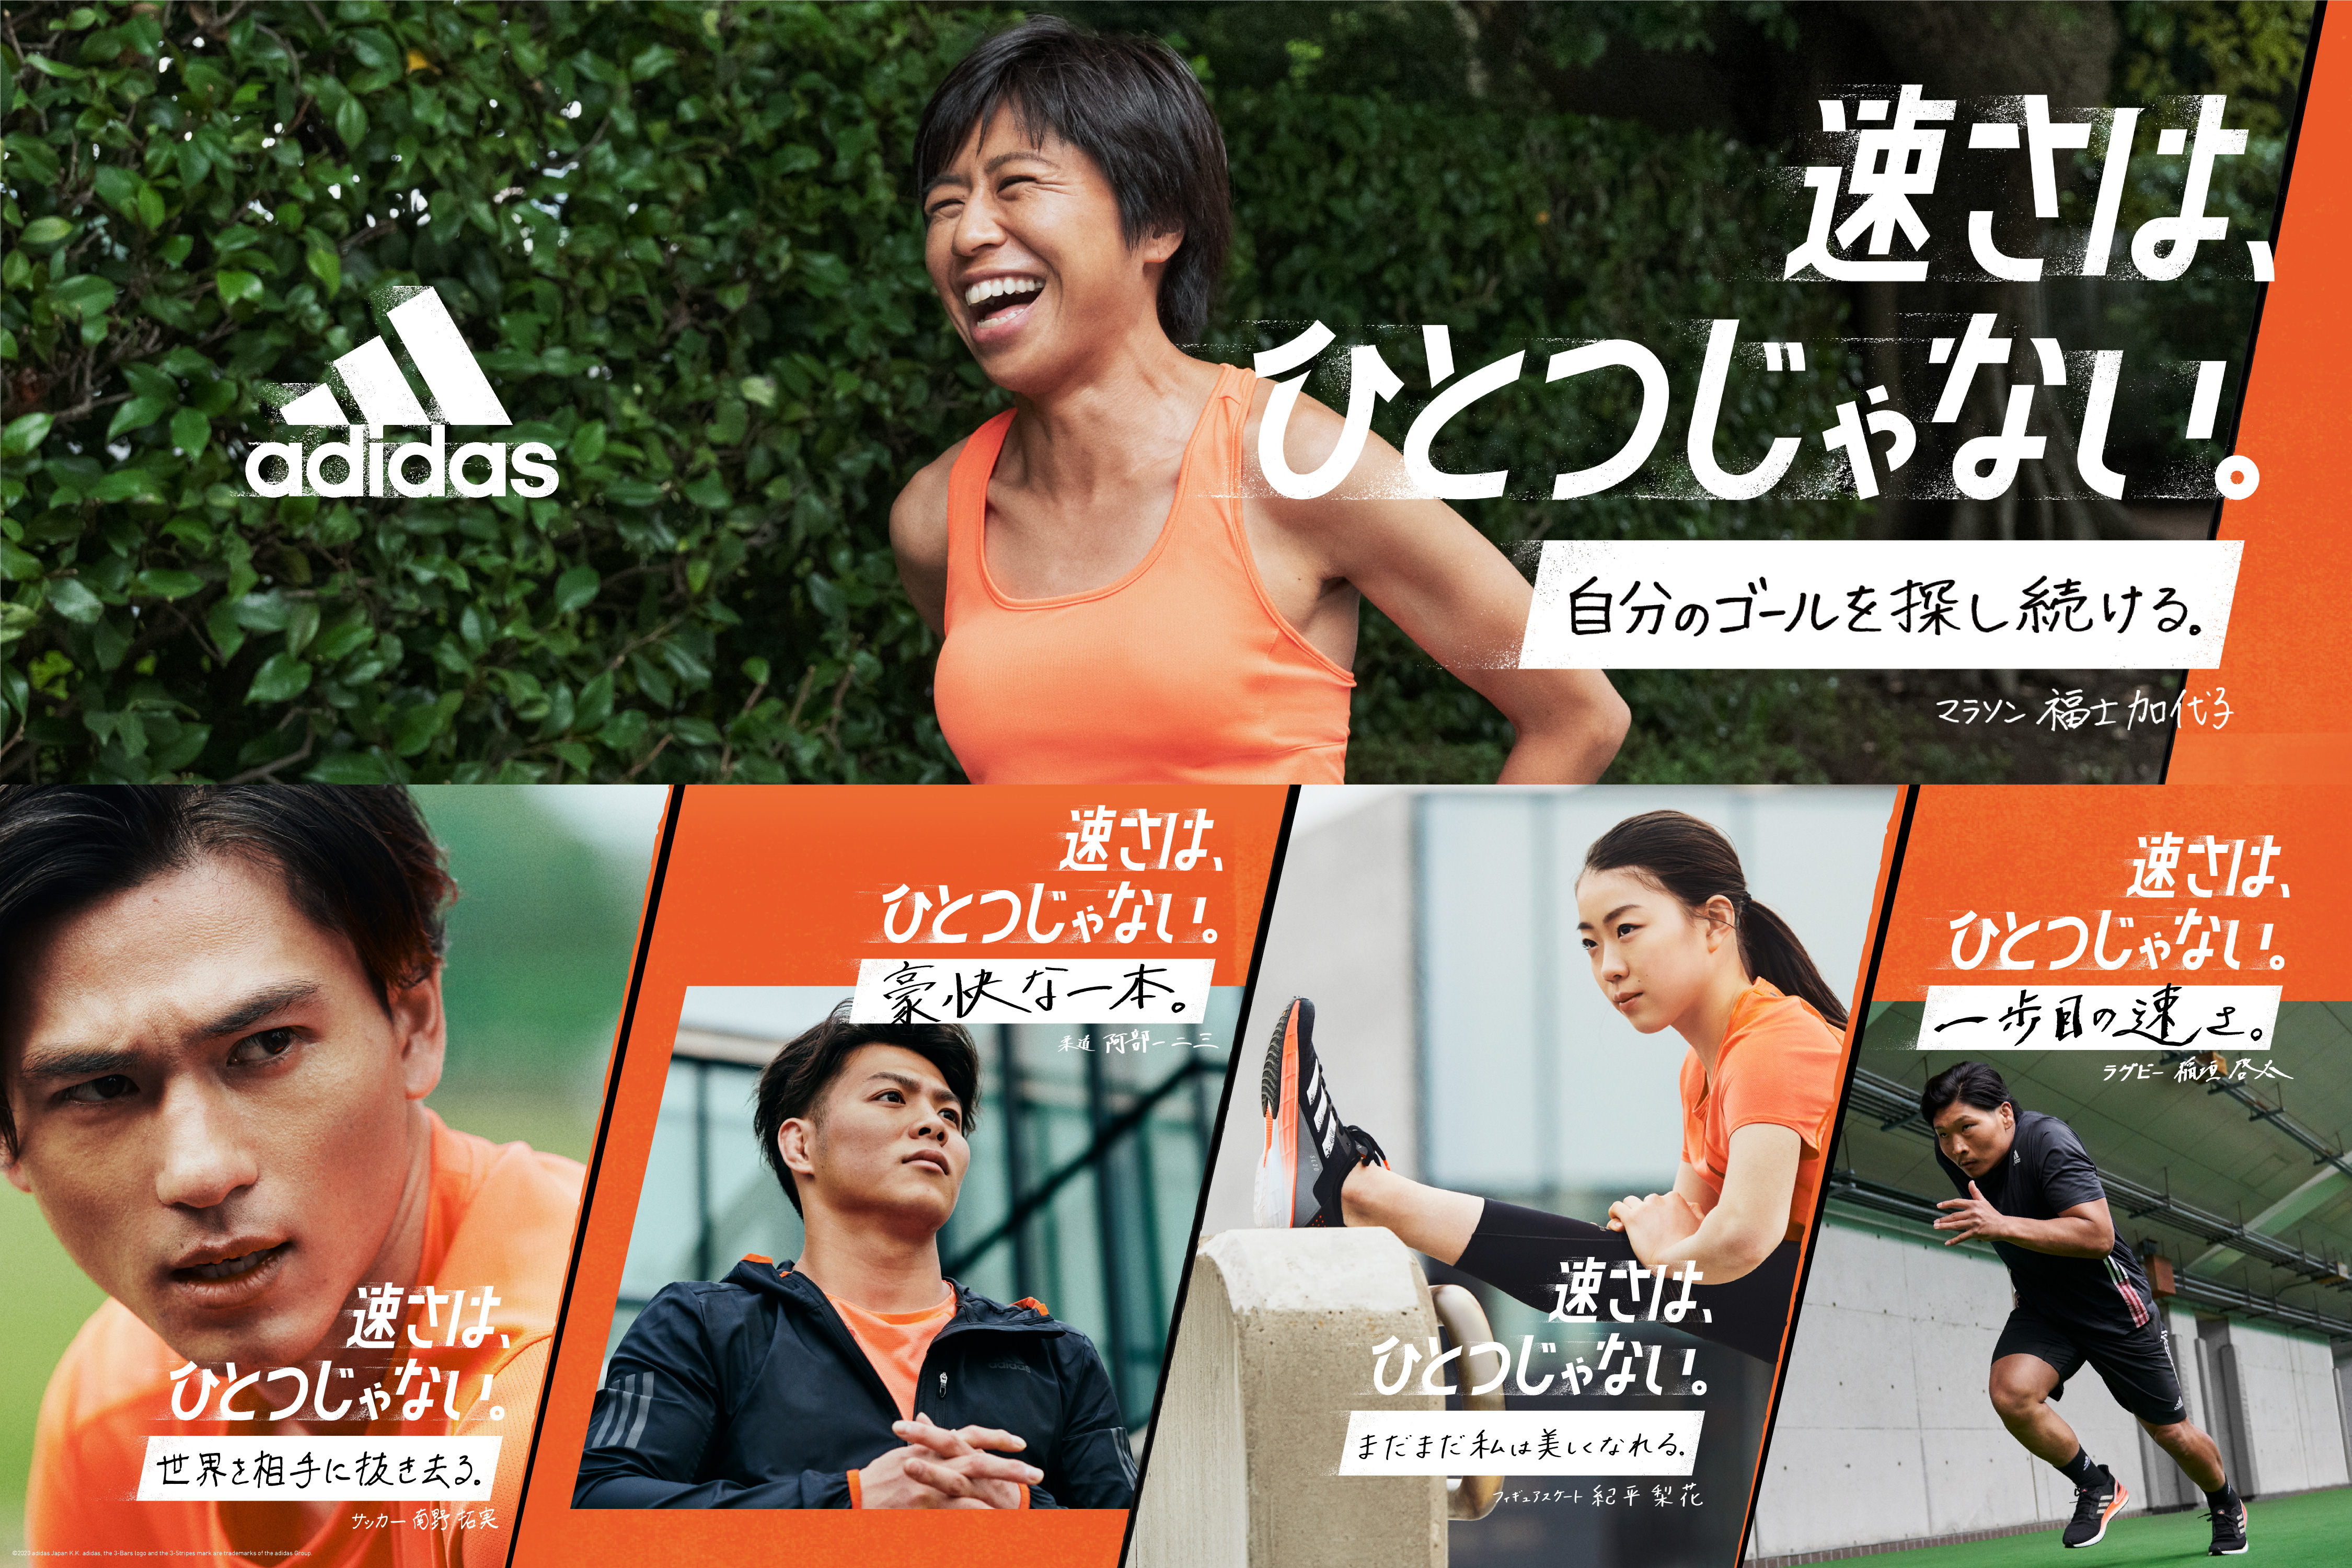 日本中約1000万人のランナーが目指すそれぞれの 速さ を叶えるキャンペーンを2月日より開始 速さは ひとつじゃない アディダス ジャパン株式会社のプレスリリース